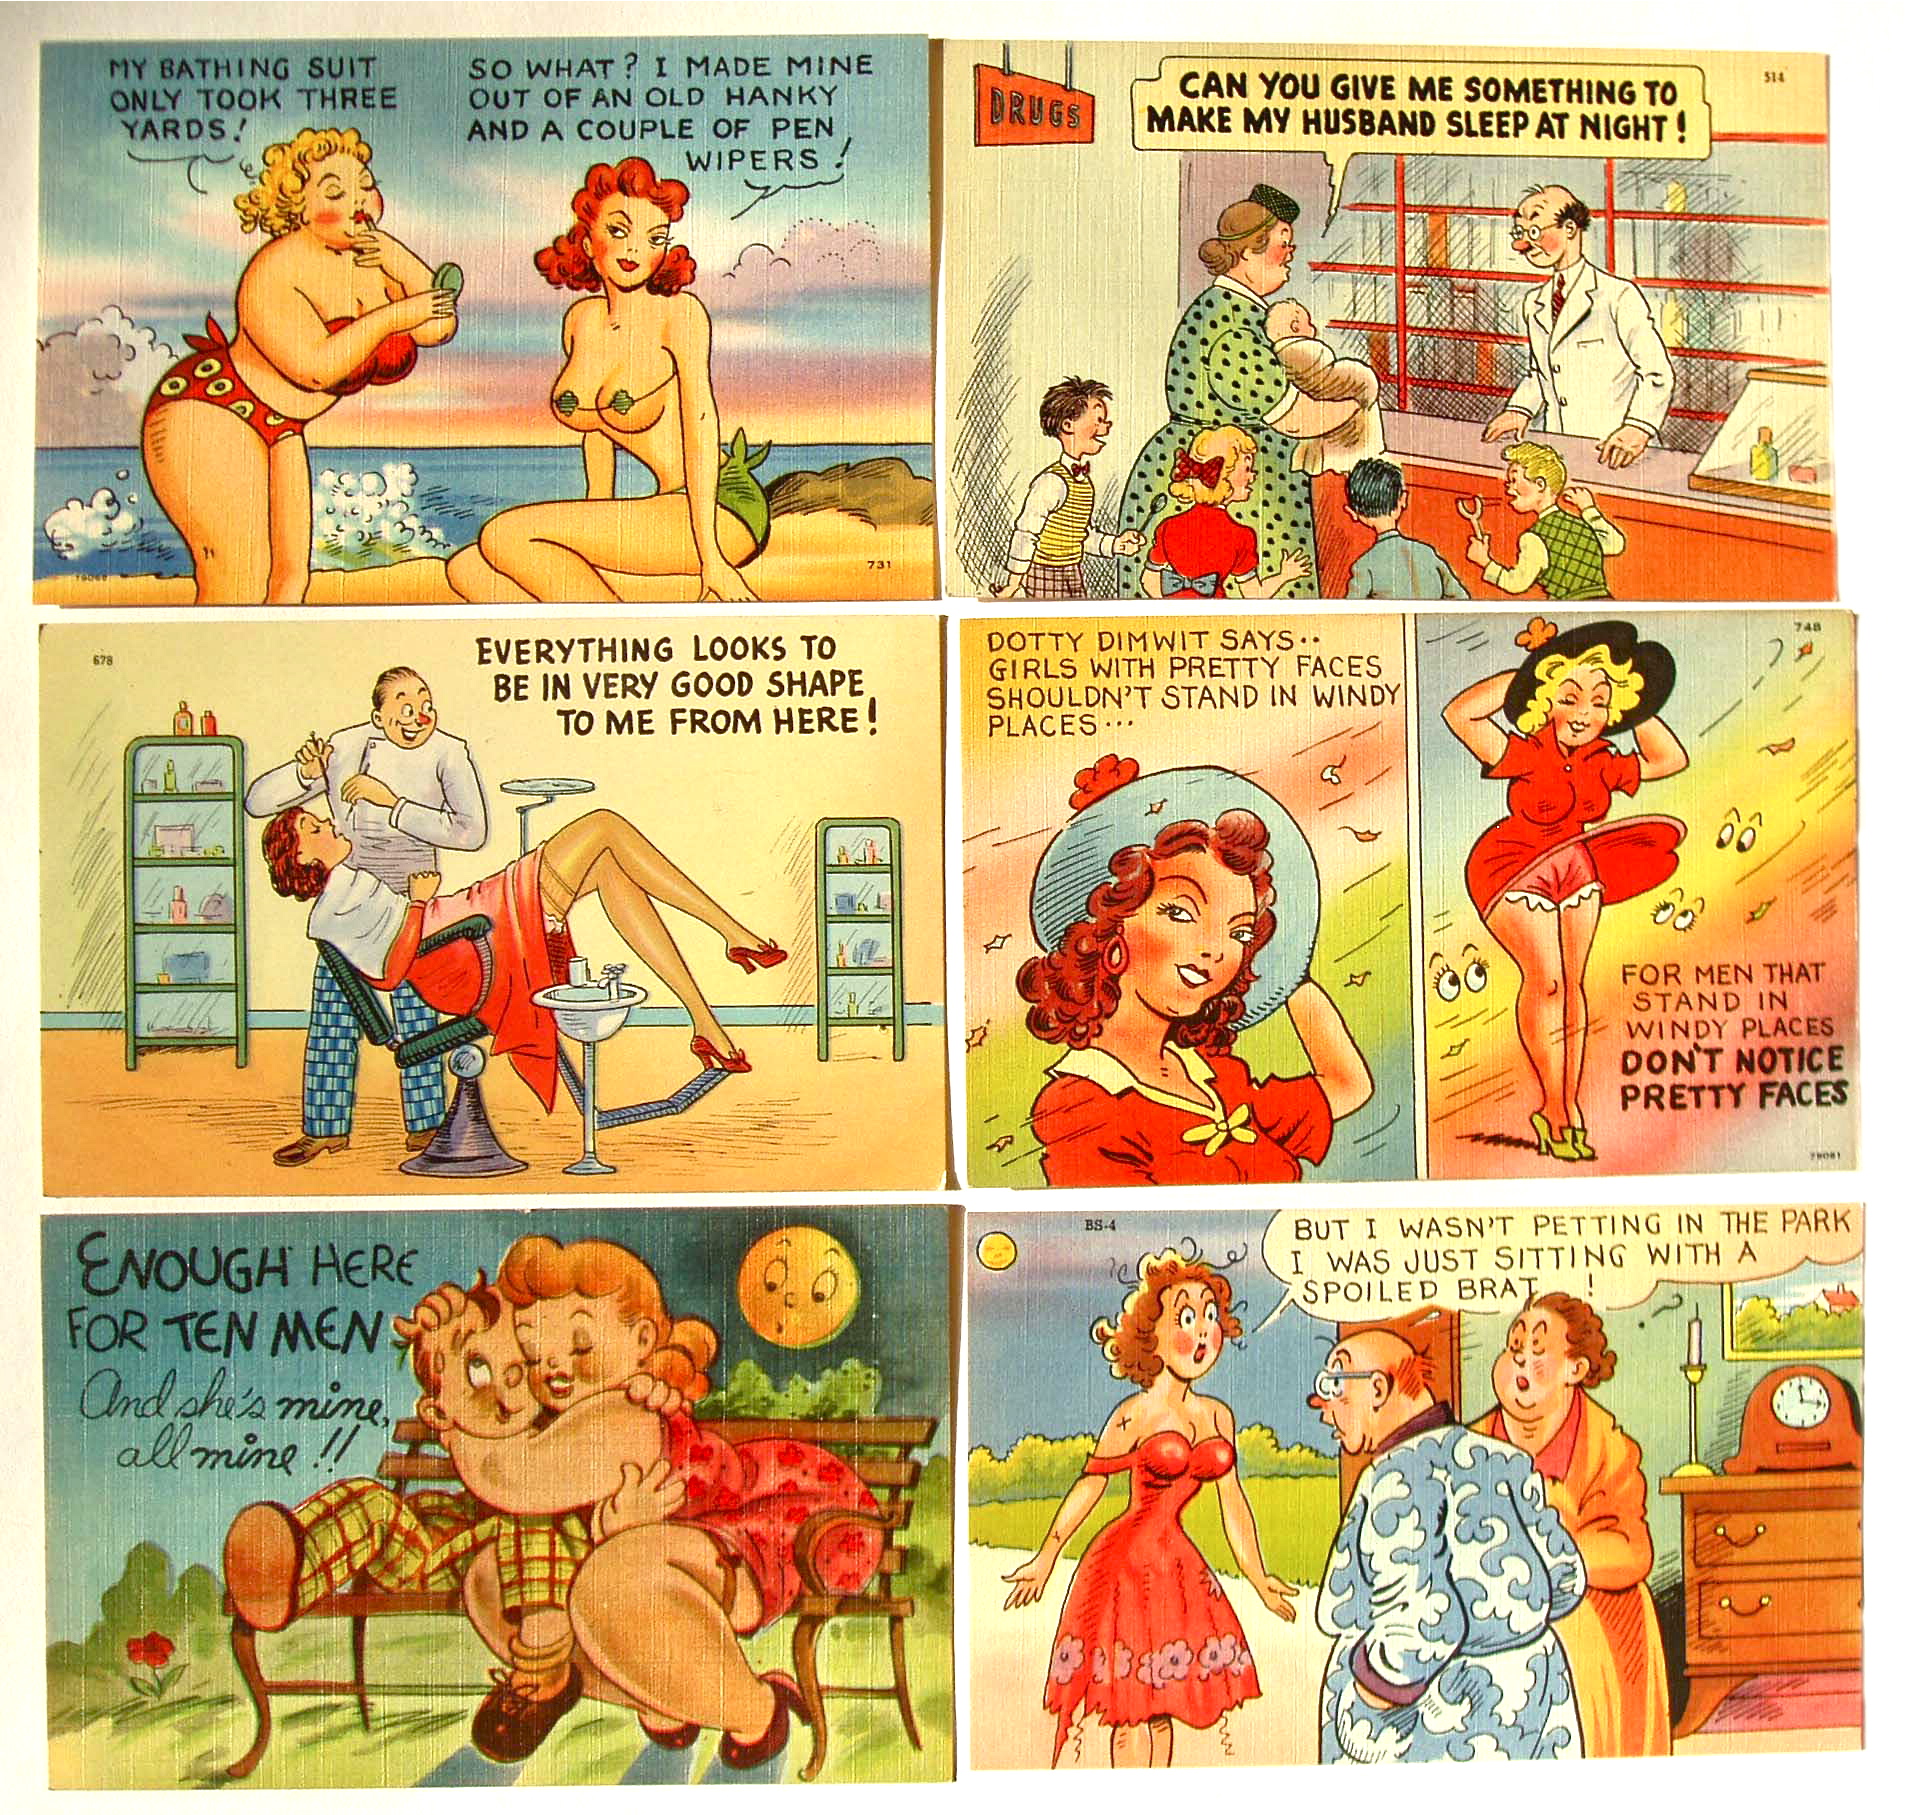 Vintage Joke Postcard